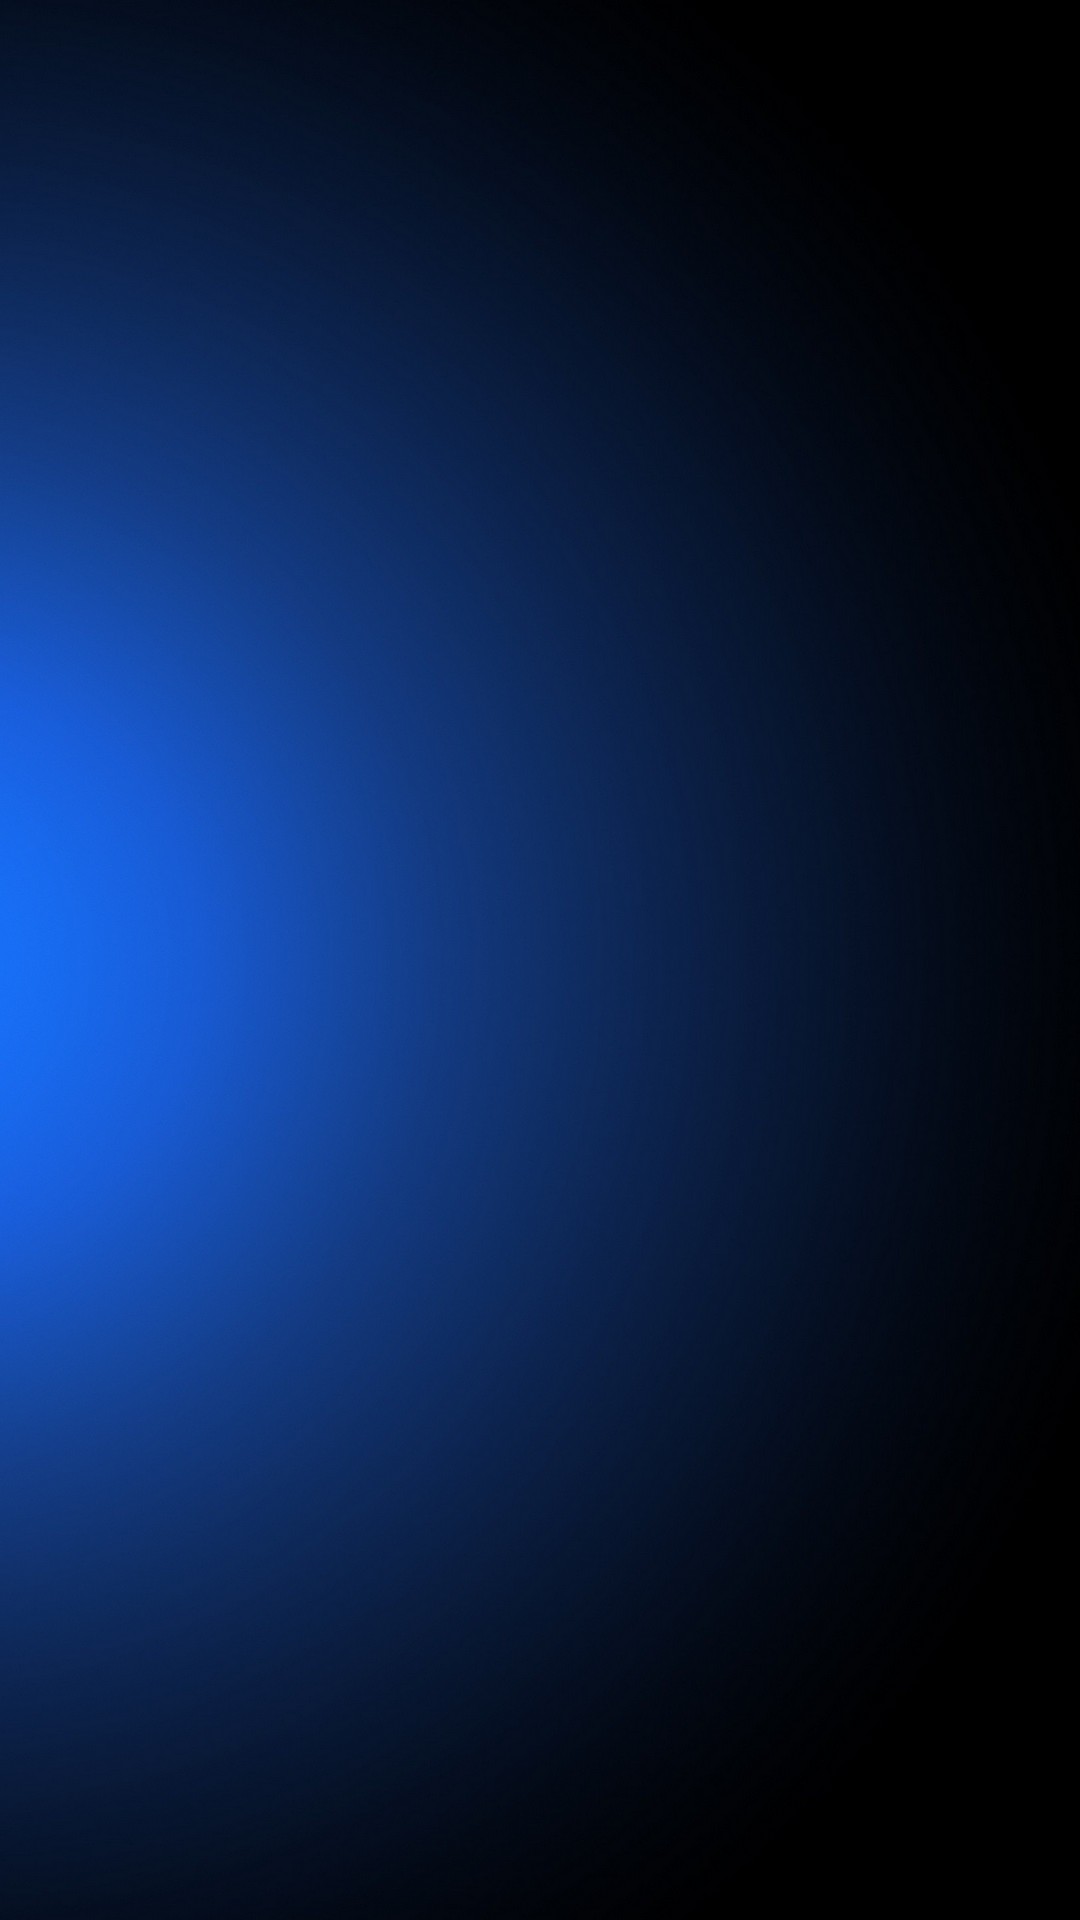 2017 fondo de pantalla para iphone,azul,negro,cielo,atmósfera,azul eléctrico